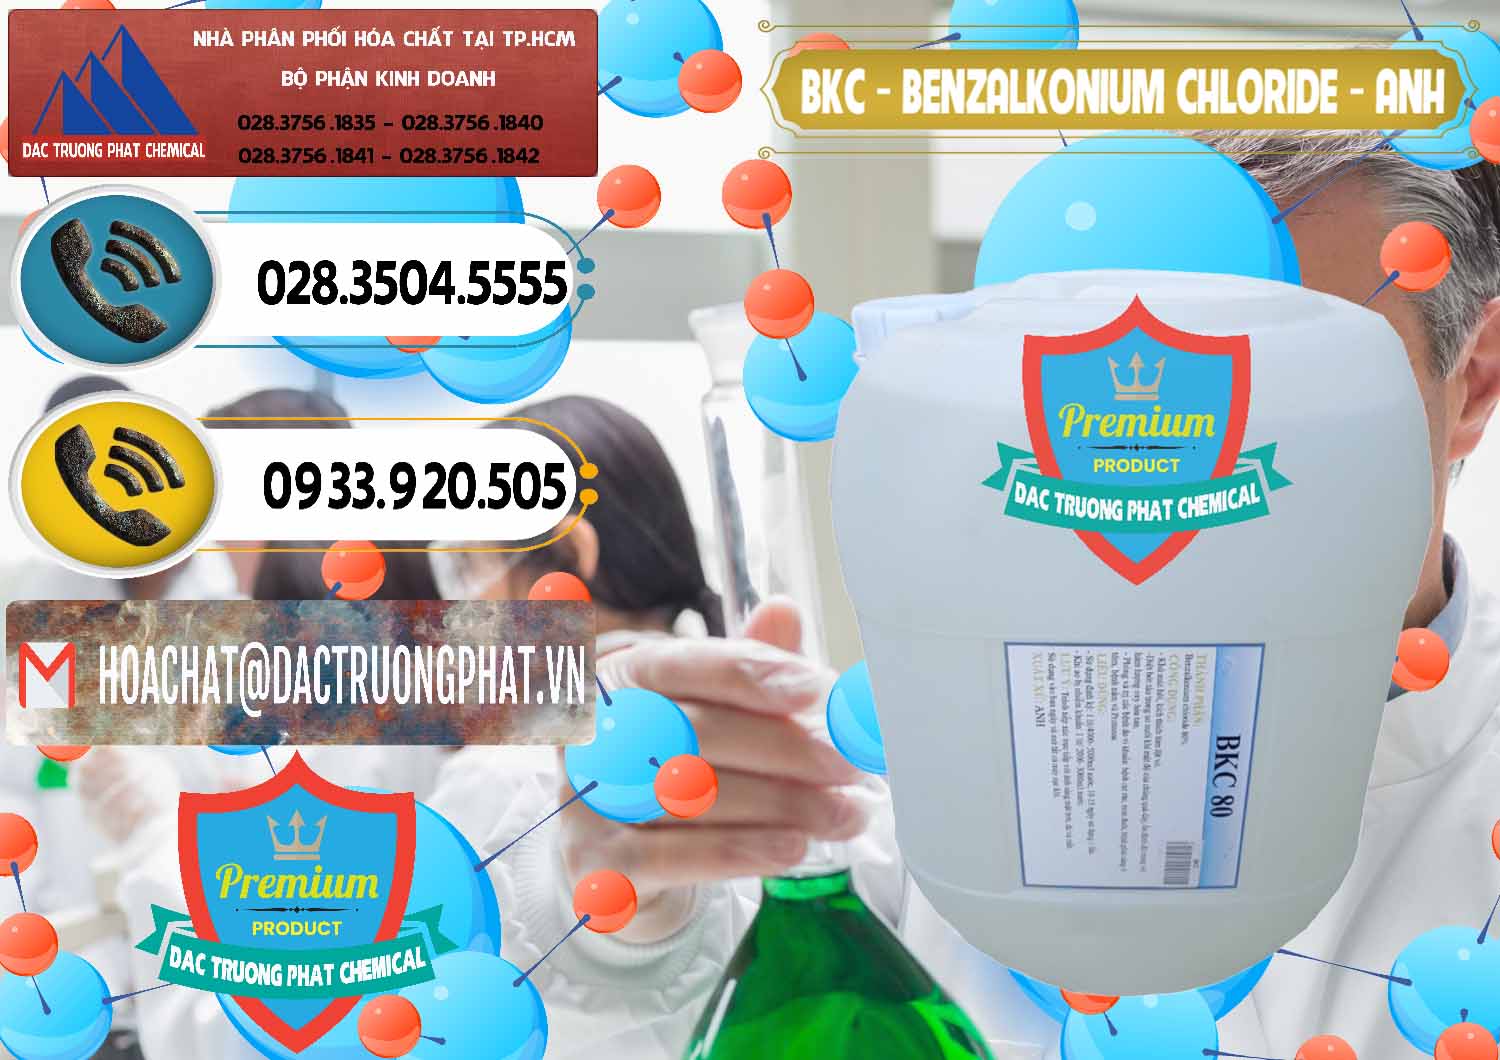 Cty cung ứng ( bán ) BKC - Benzalkonium Chloride Anh Quốc Uk Kingdoms - 0415 - Nhập khẩu & cung cấp hóa chất tại TP.HCM - hoachatdetnhuom.vn